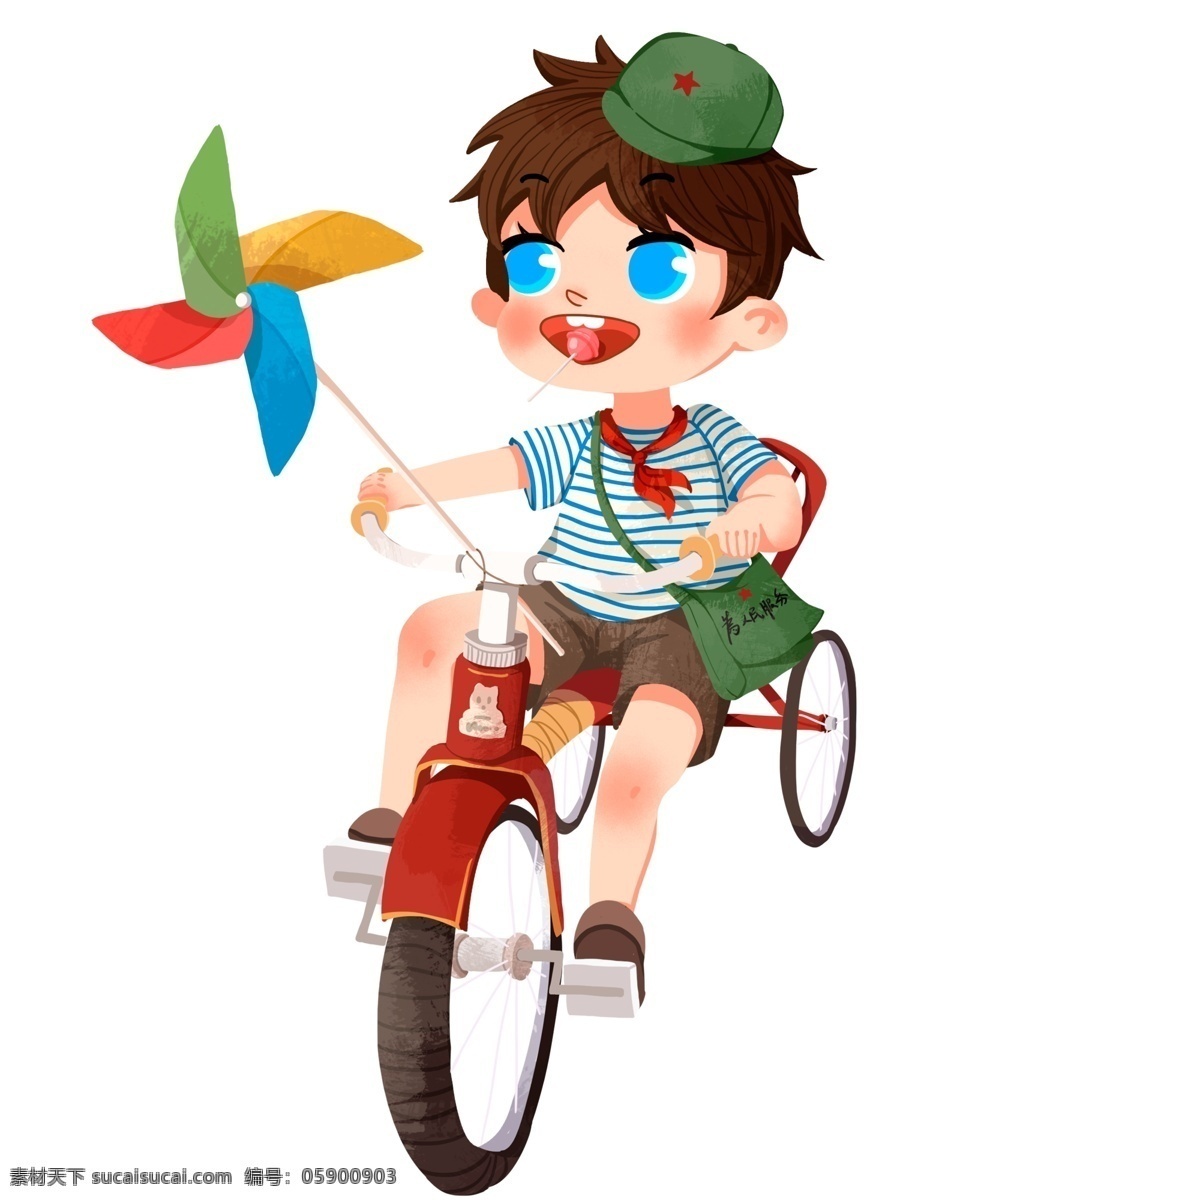 快乐 61 骑 自行车 小 男孩 插画 人物 创意 手绘 节日 快乐六一 61快乐 儿童节 骑自行车 风车